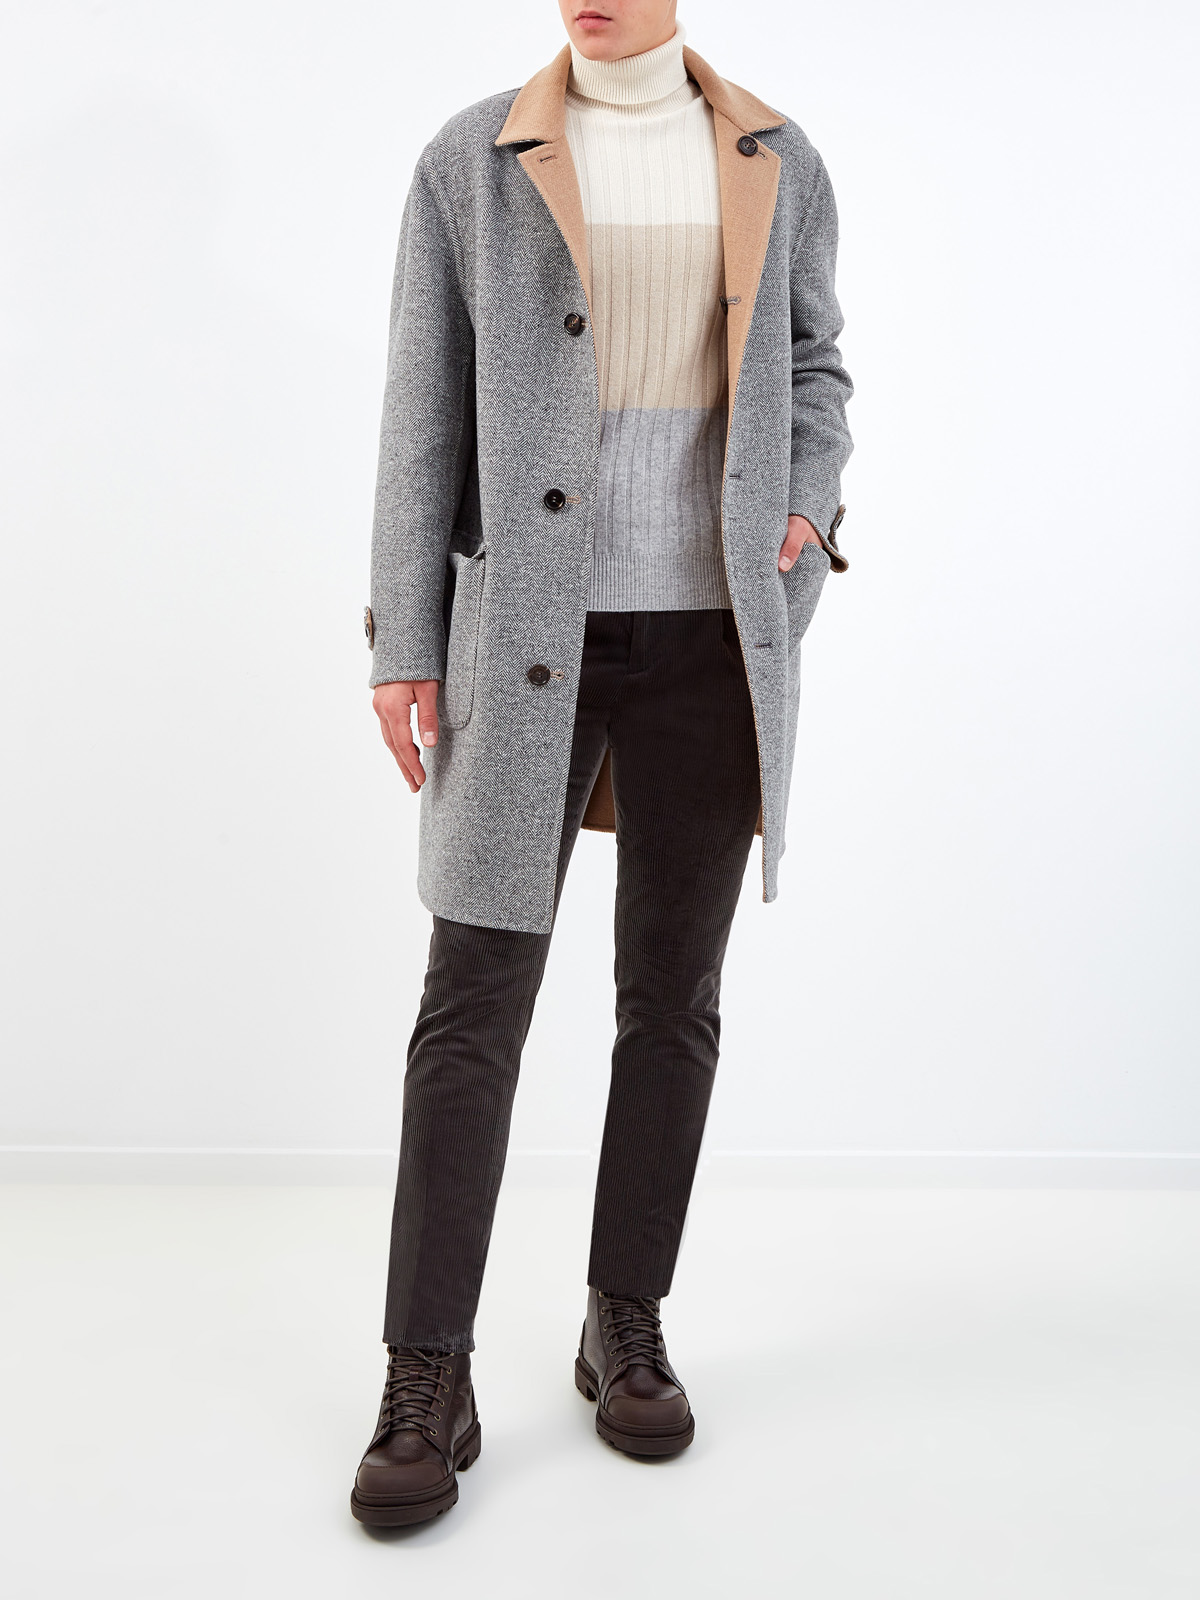 Двустороннее пальто-редингот из шерсти и кашемира BRUNELLO CUCINELLI, цвет мульти, размер 50;54 - фото 2